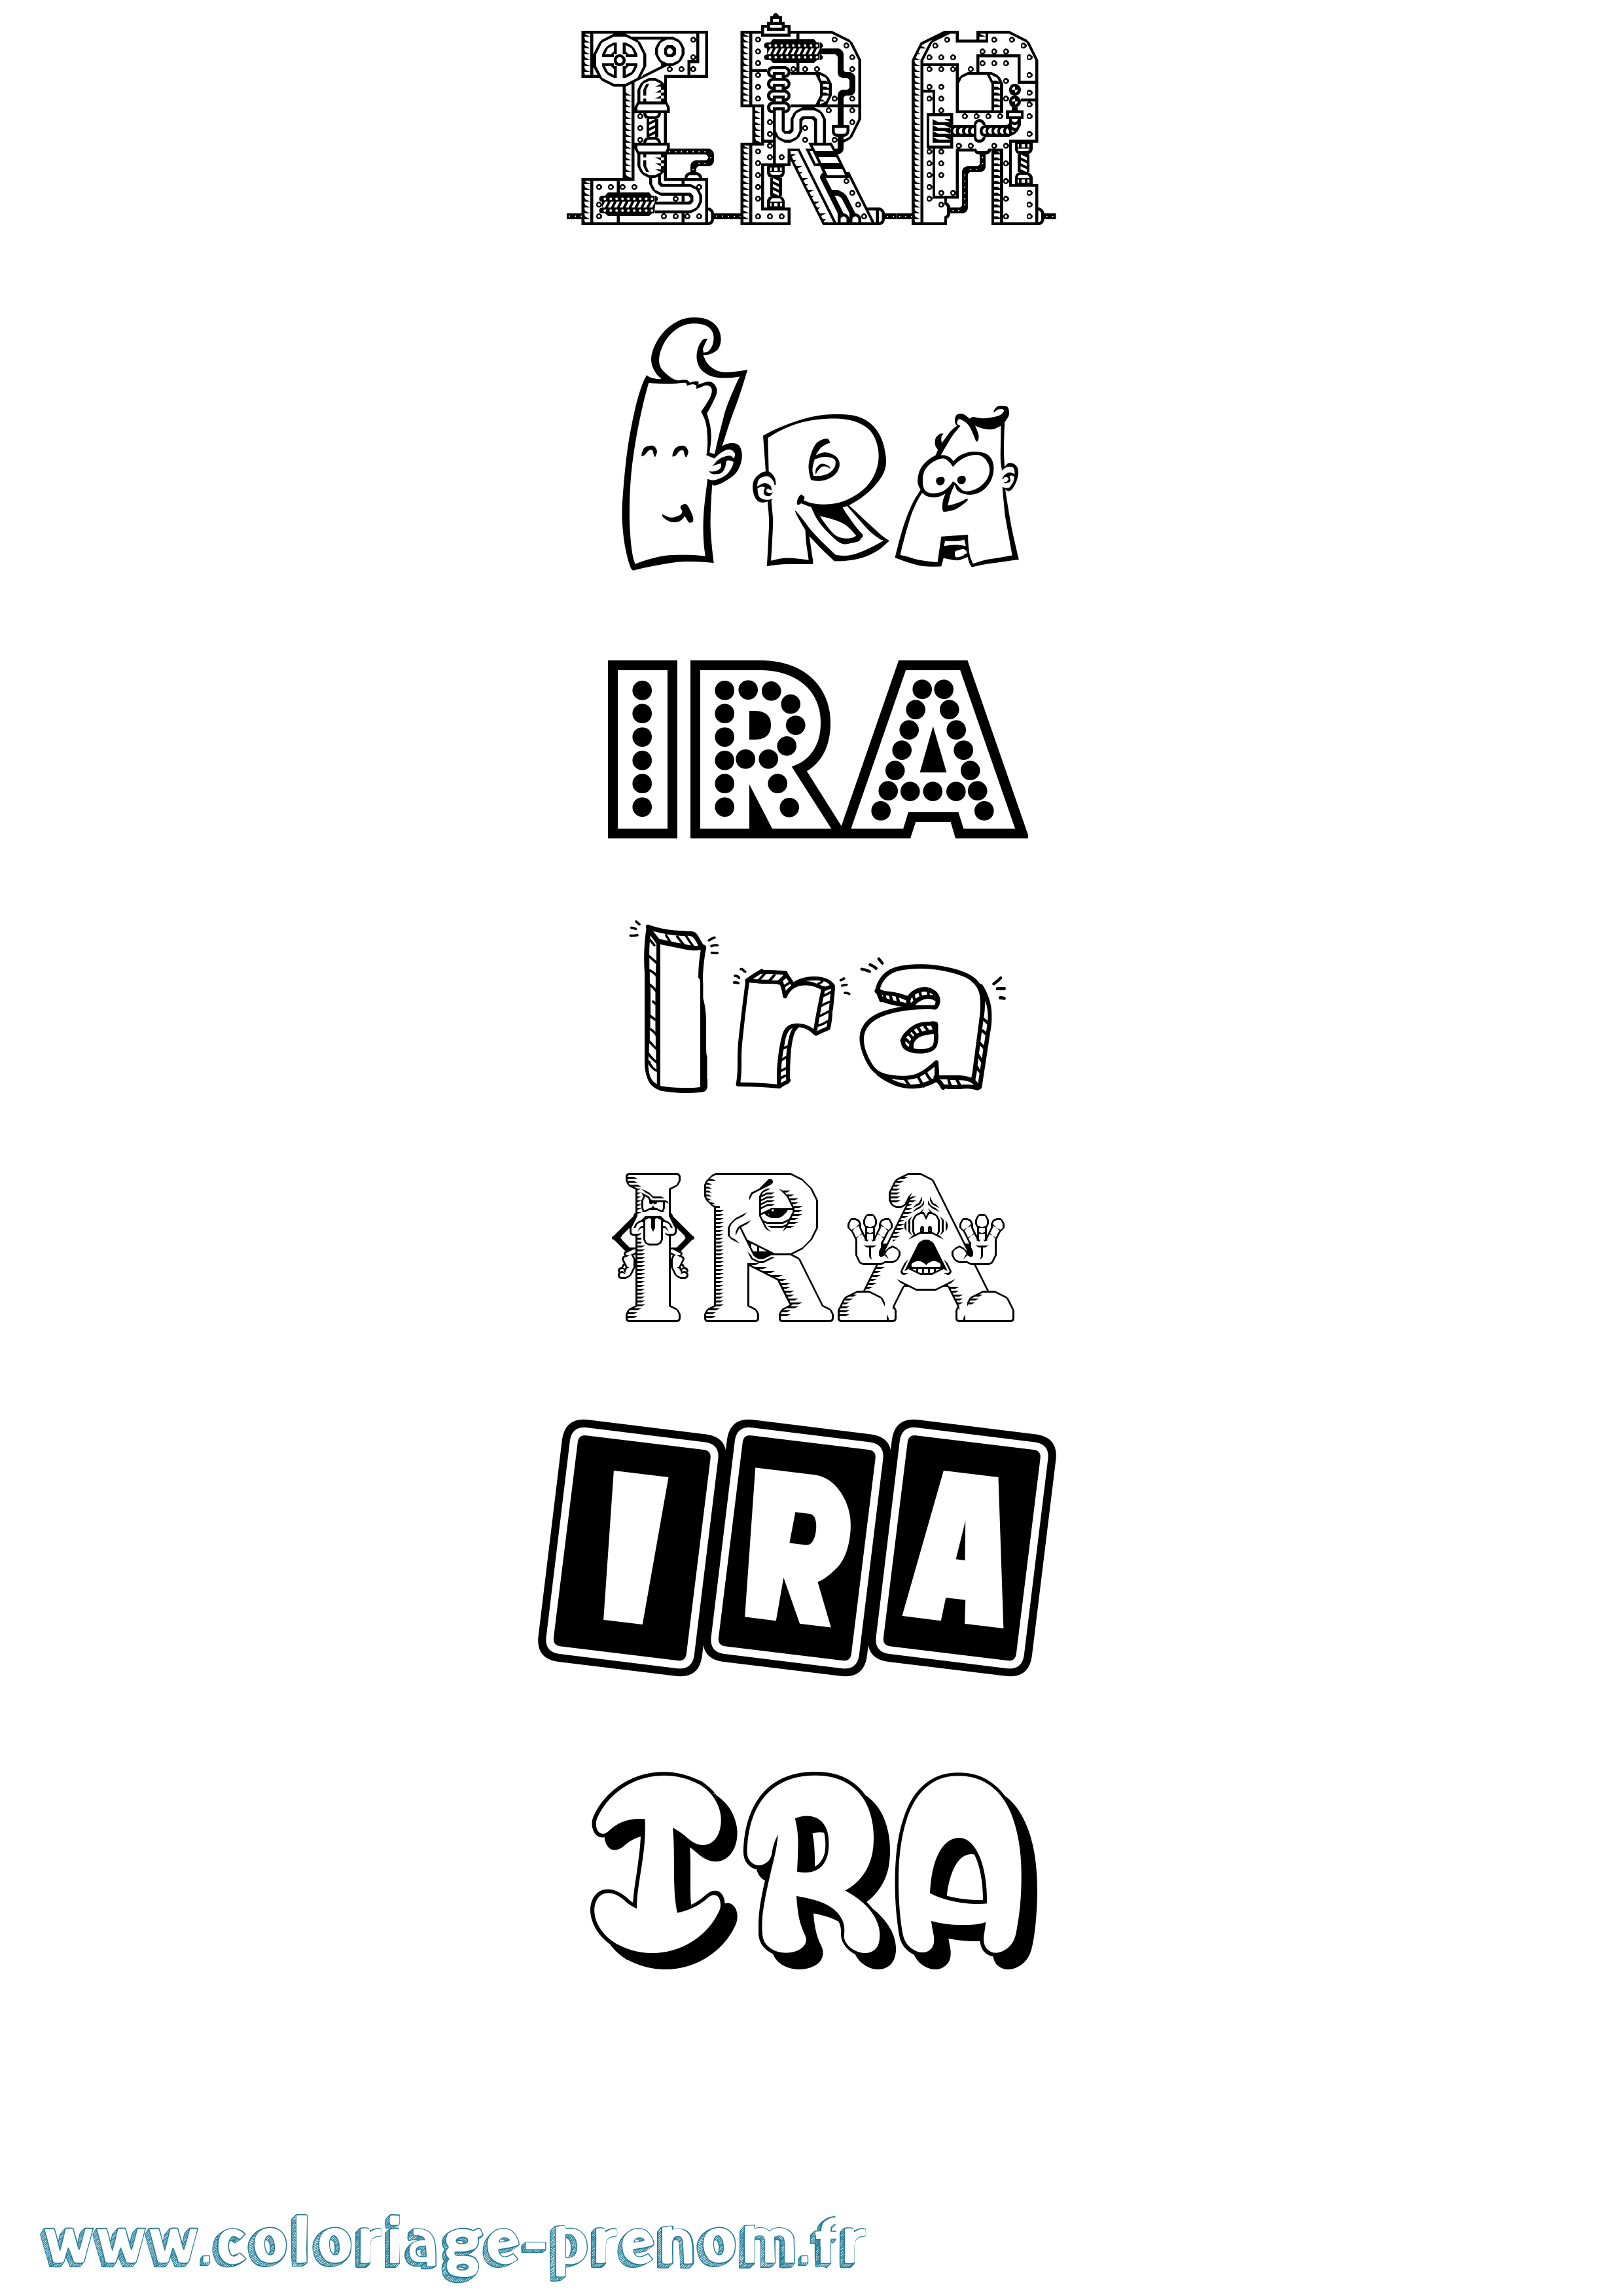 Coloriage prénom Ira Fun